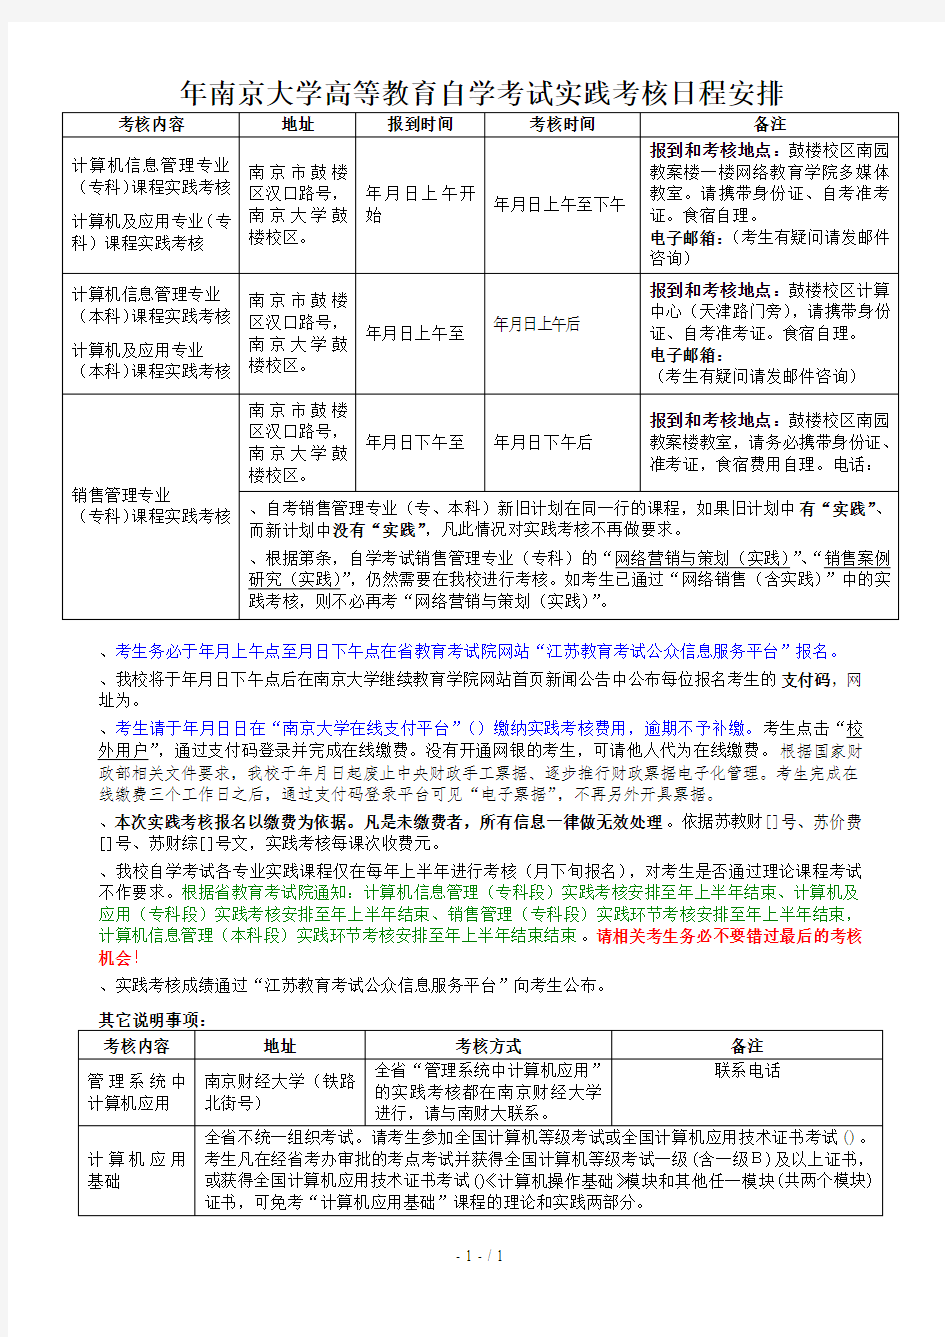 2019年南京大学高等教育自学考试实践考核日程安排